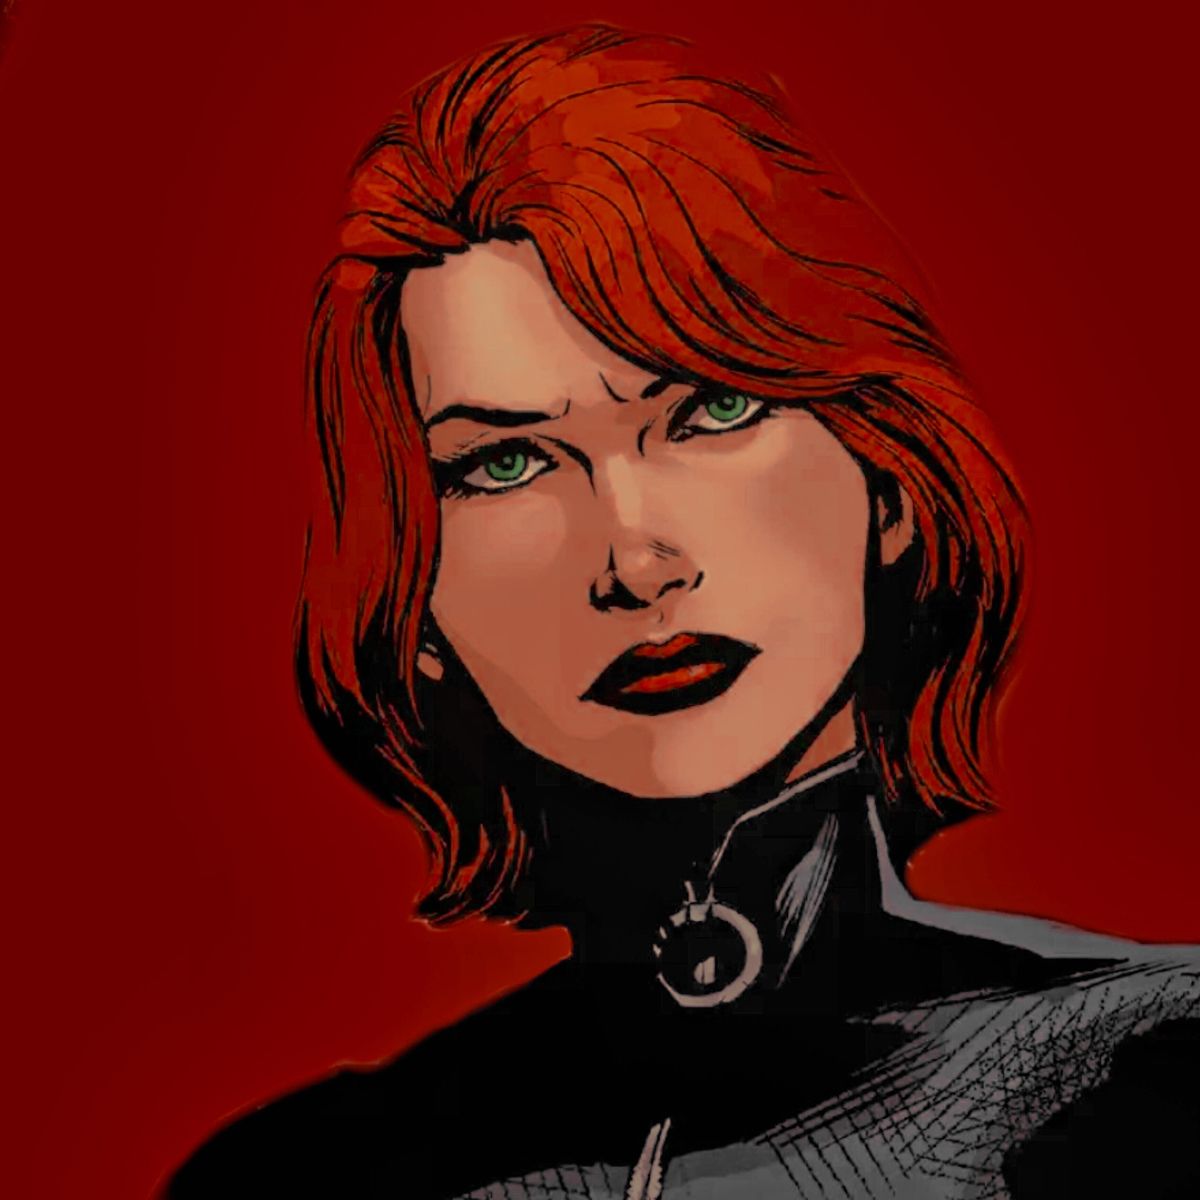 Imagem miniatura do personagem Viúva Negra da Marvel